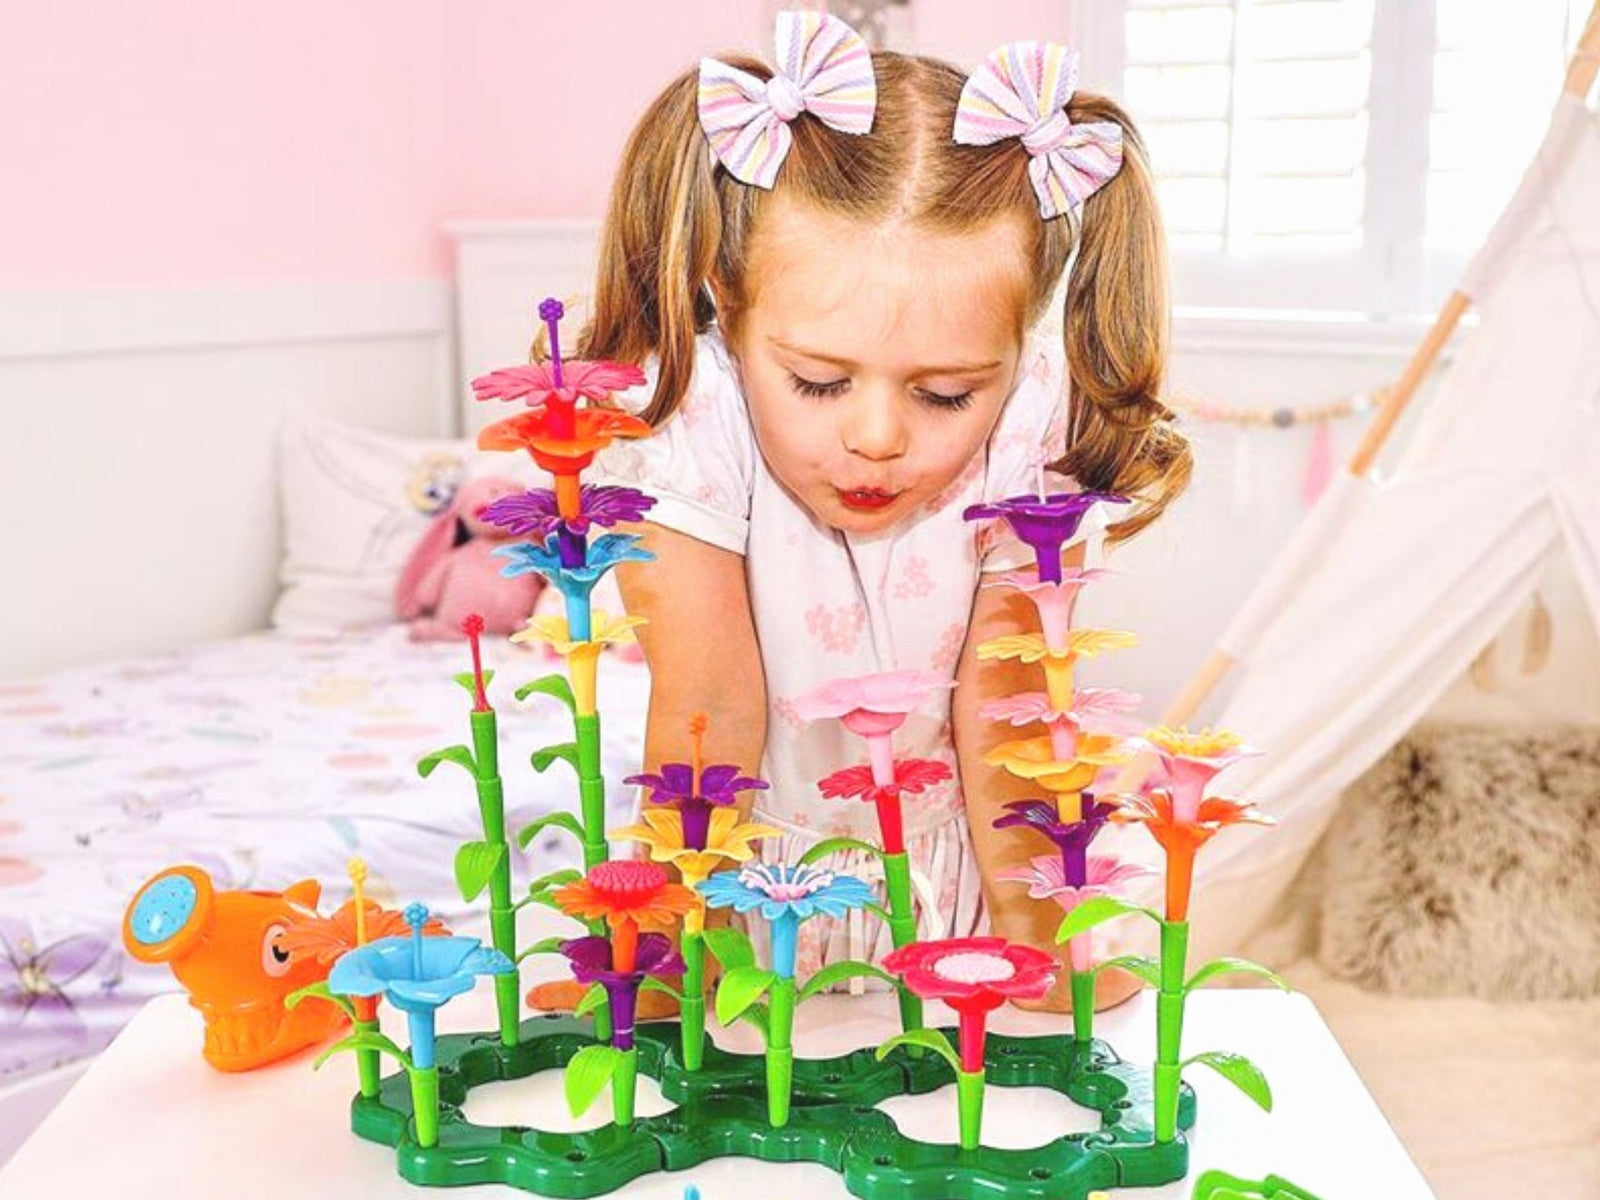 Flower Garden Building Toy, Build A Flower Garden Toddler Toy 110Pc